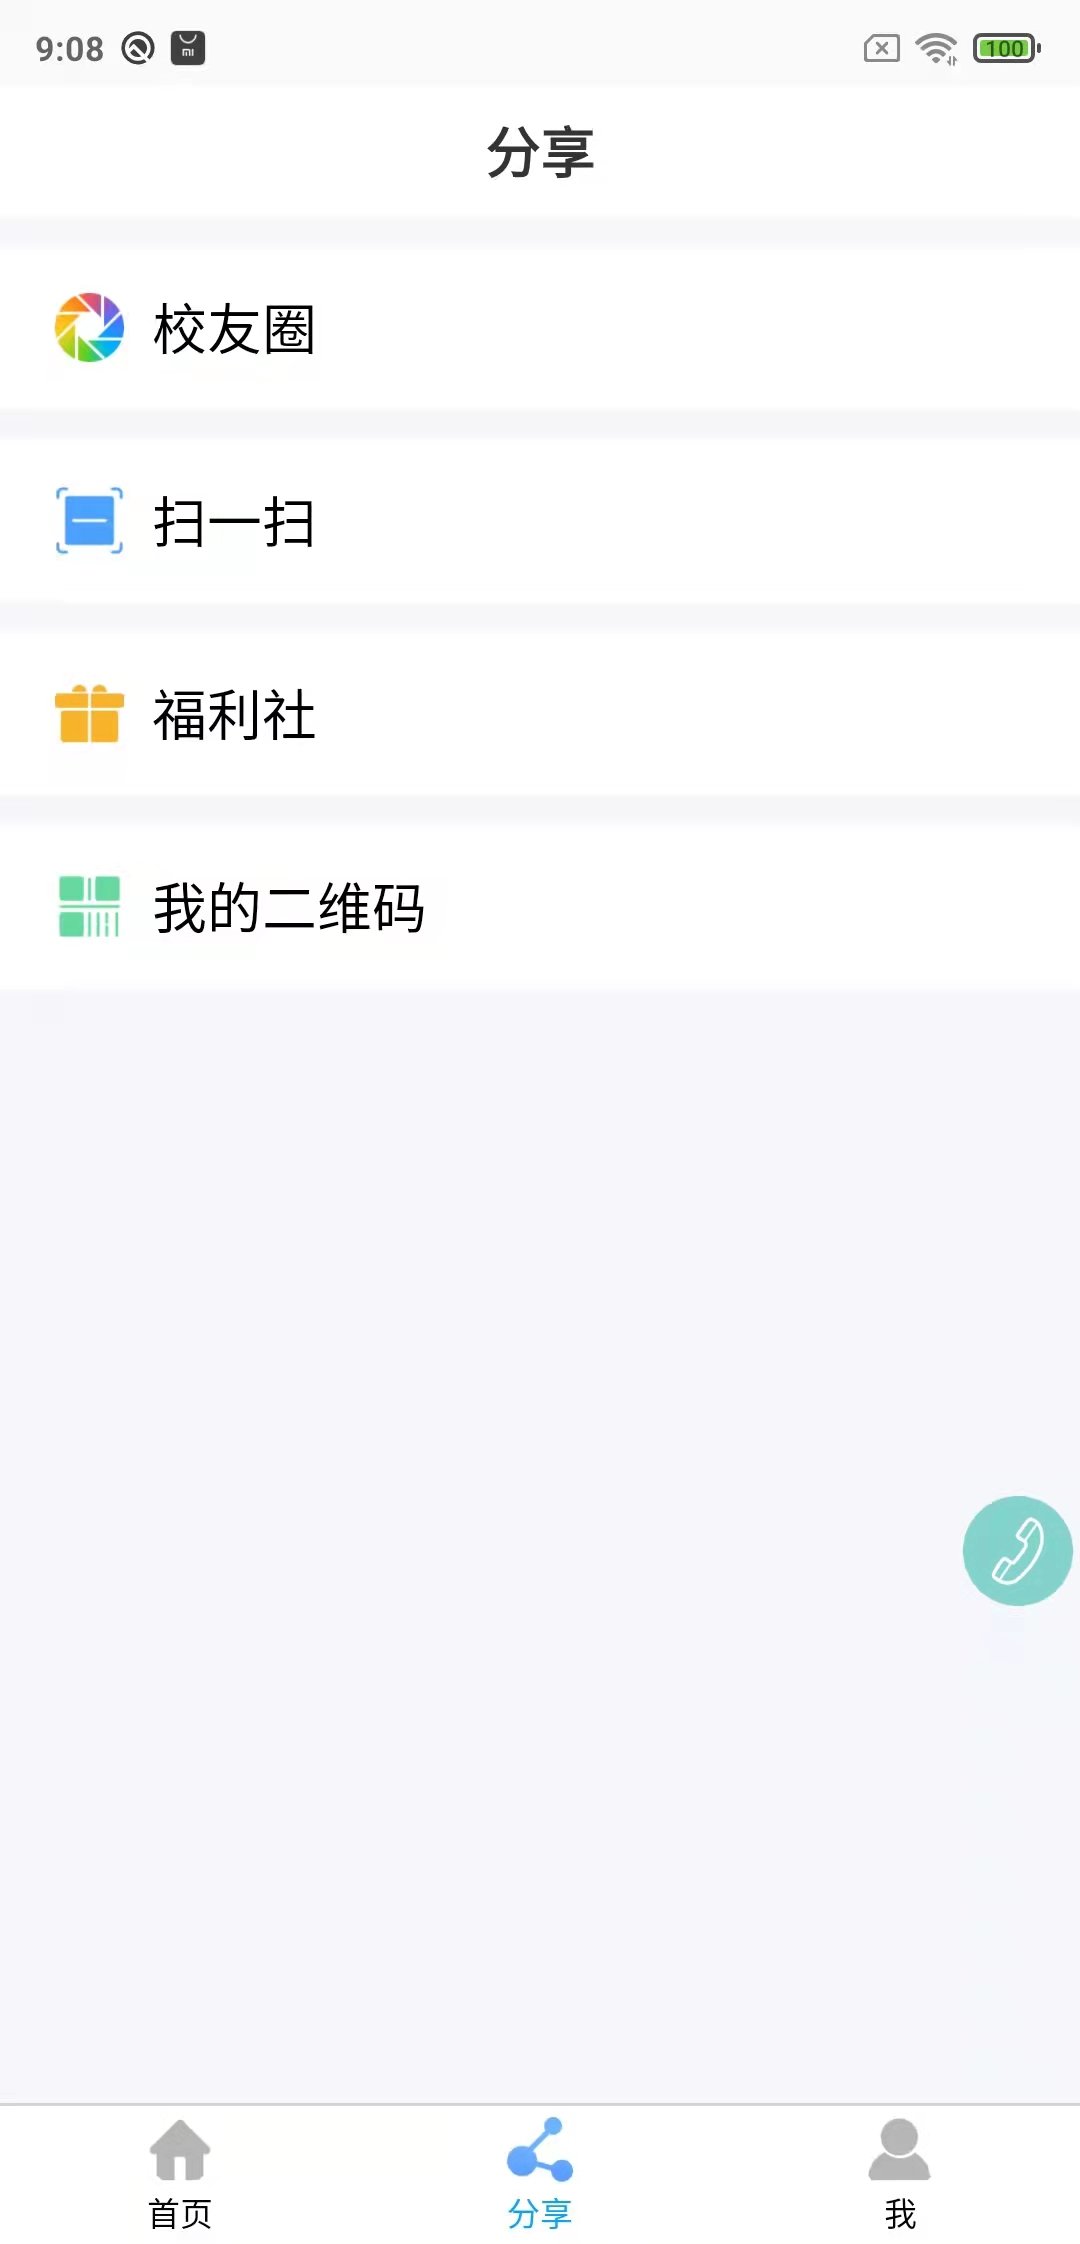 鑫考云校园手机版 v2.9.4 安卓官方版 0